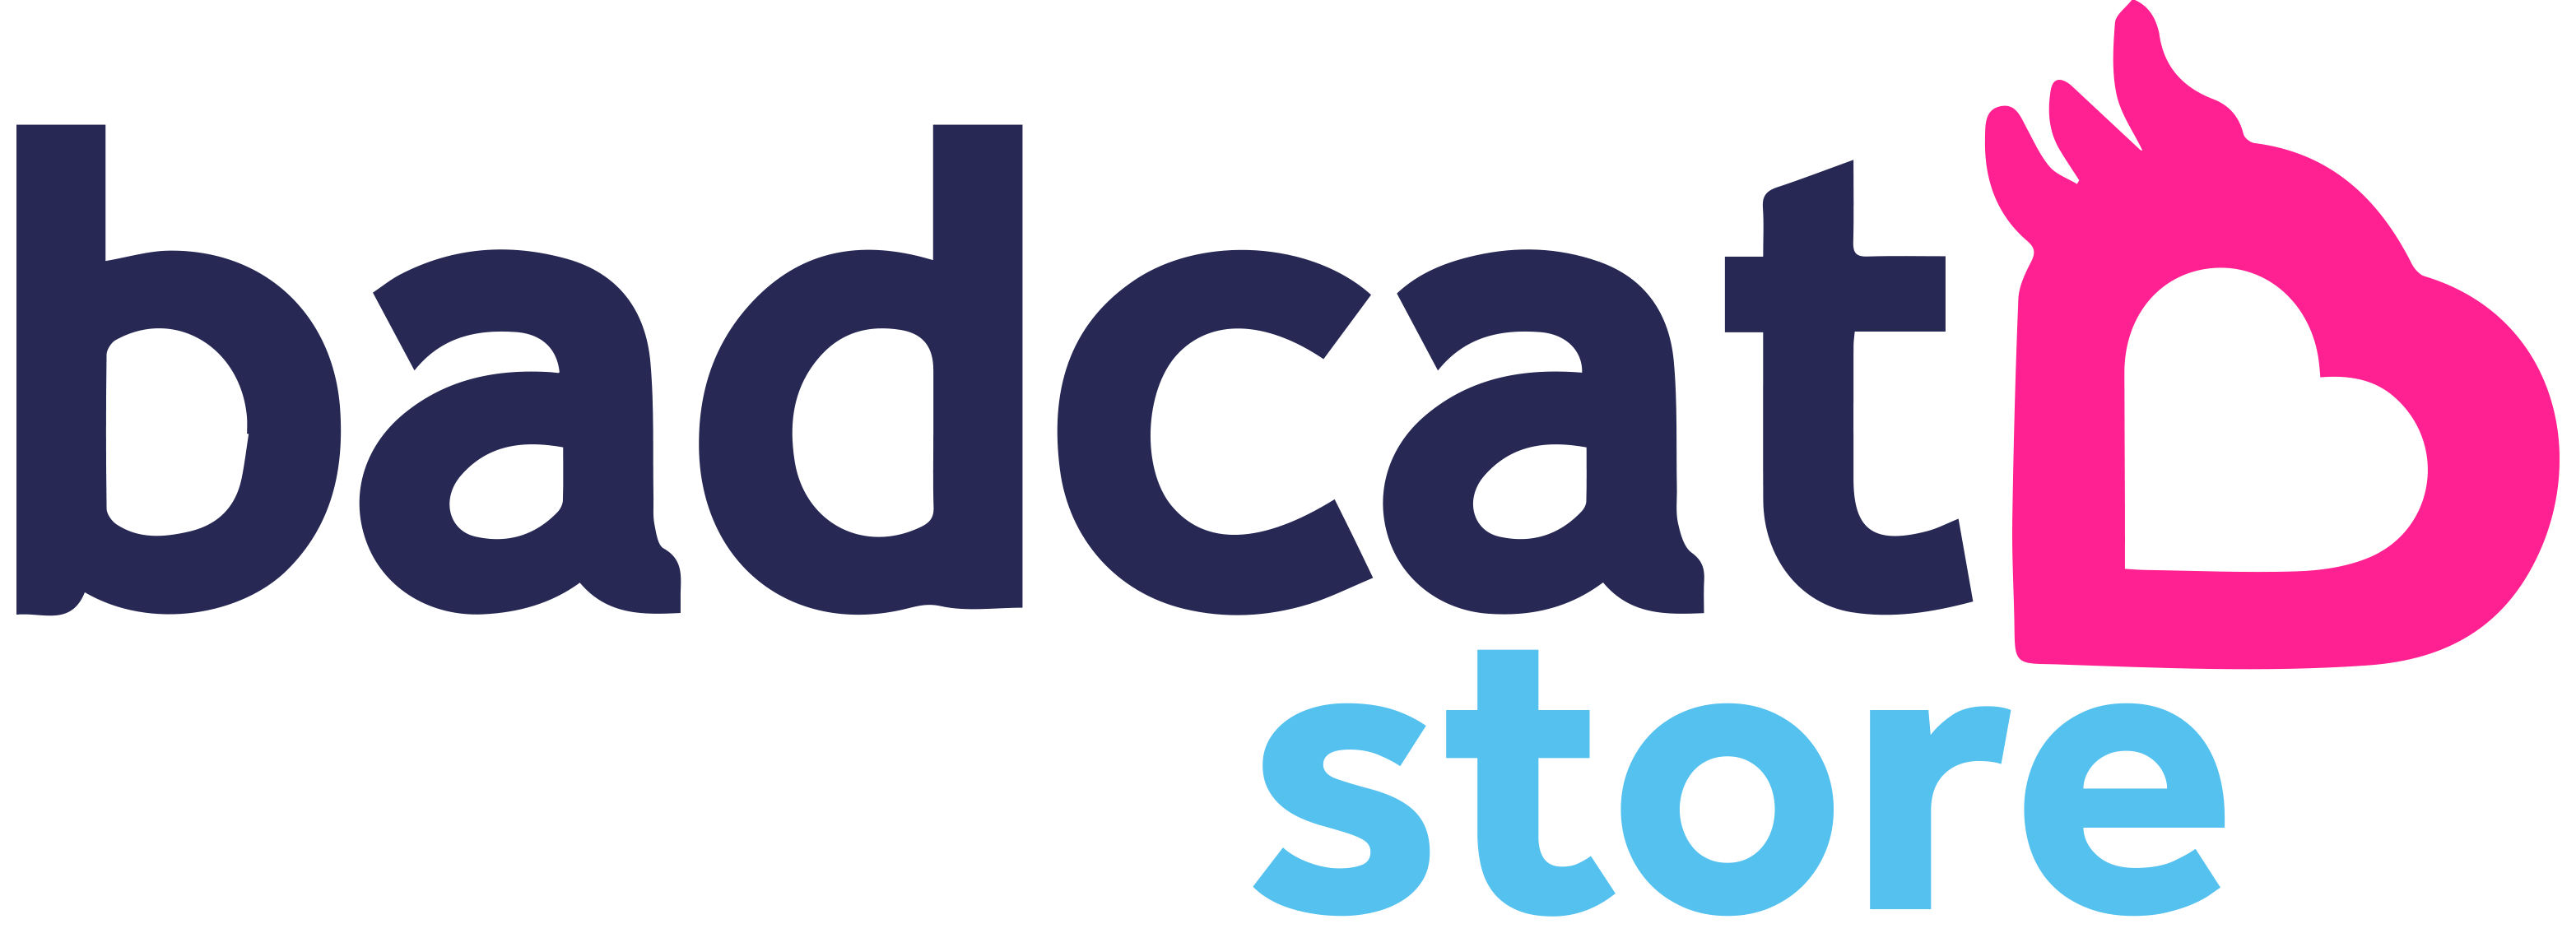 Sacola Badcat - Compre agora | Badcat Store